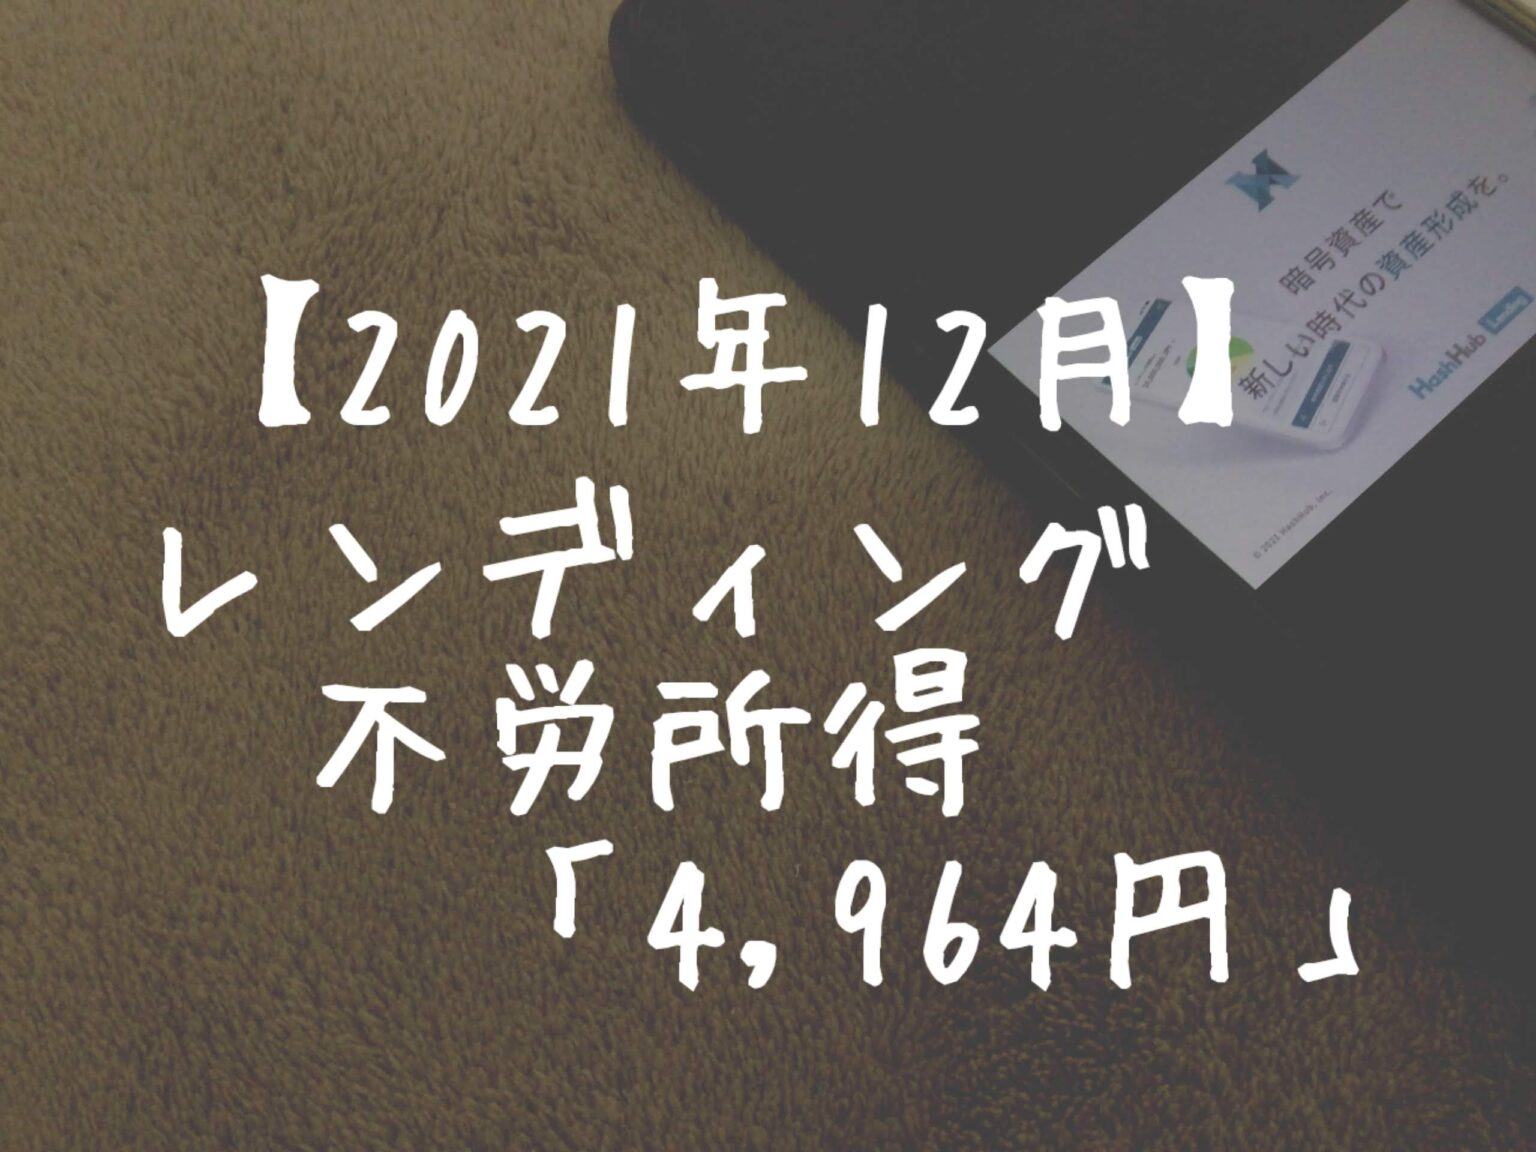 【2021年12月】レンディングからの不労所得は「4,964円」でした！